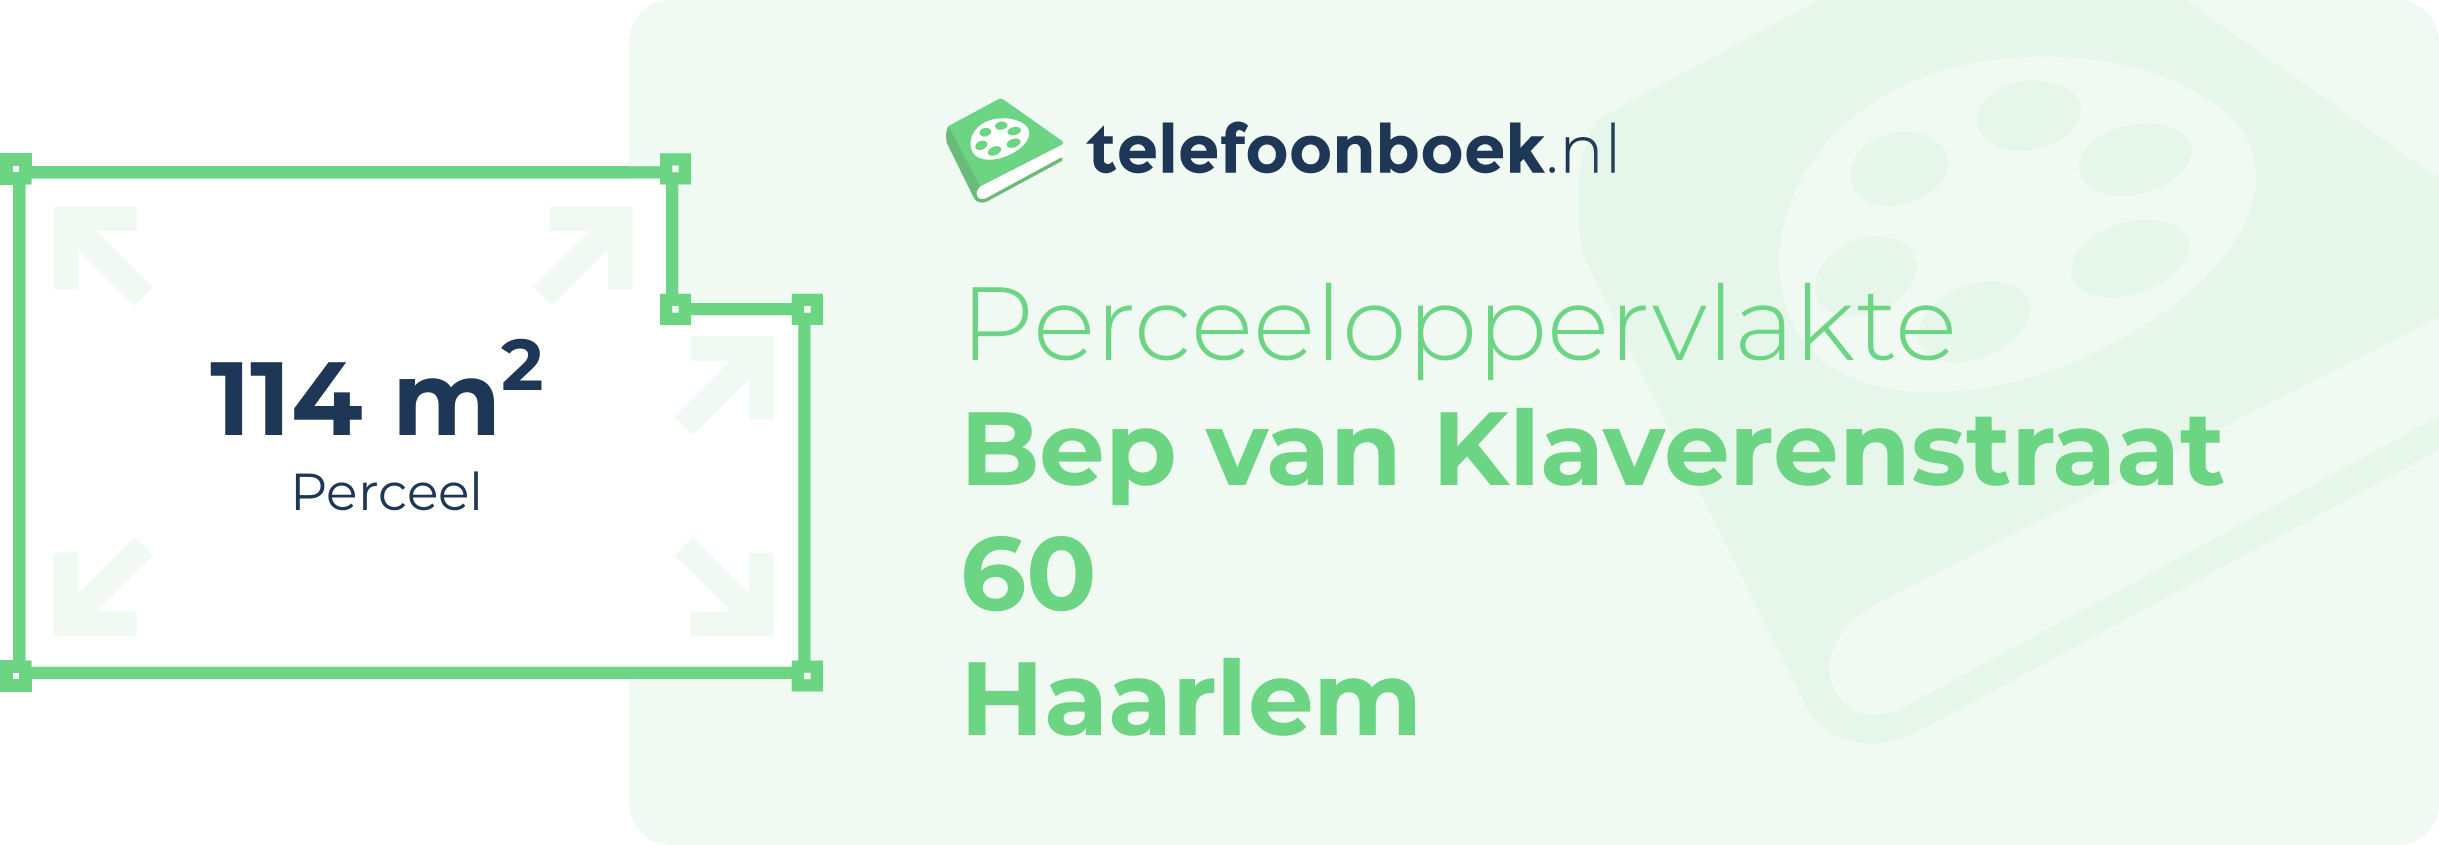 Perceeloppervlakte Bep Van Klaverenstraat 60 Haarlem